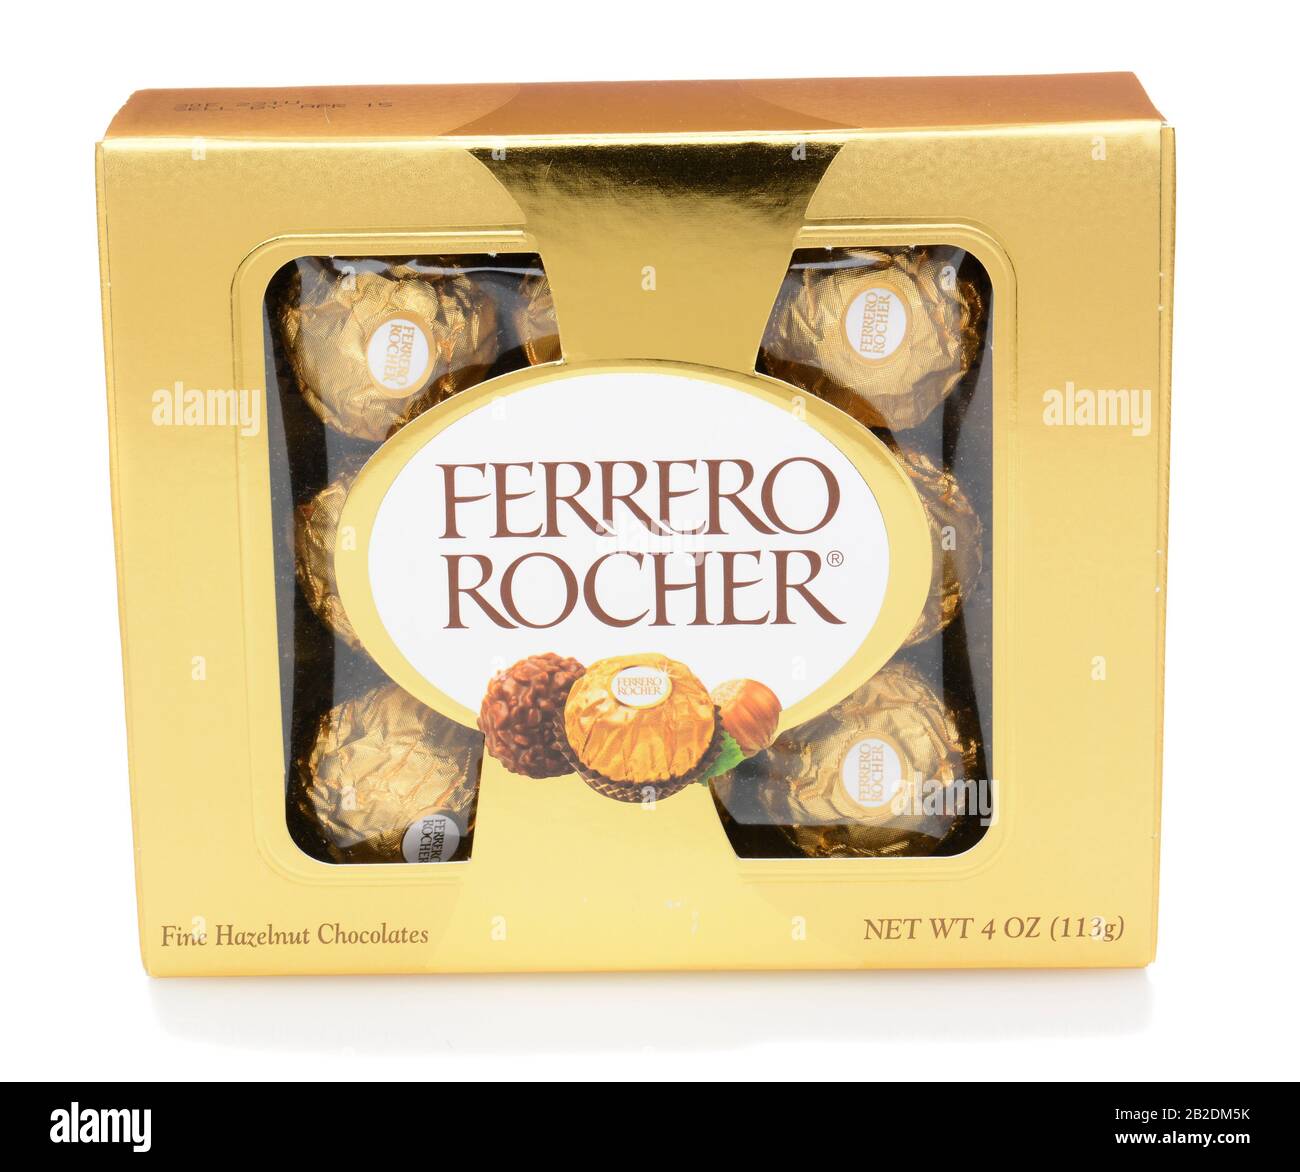 Irvine, CA - 12 DÉCEMBRE 2014 : une boîte de chocolats Ferrero Rocher.  Depuis 1982, les bonbons se composent d'une noisette rôtie entière dans une  fine coquille de gaufre f Photo Stock - Alamy